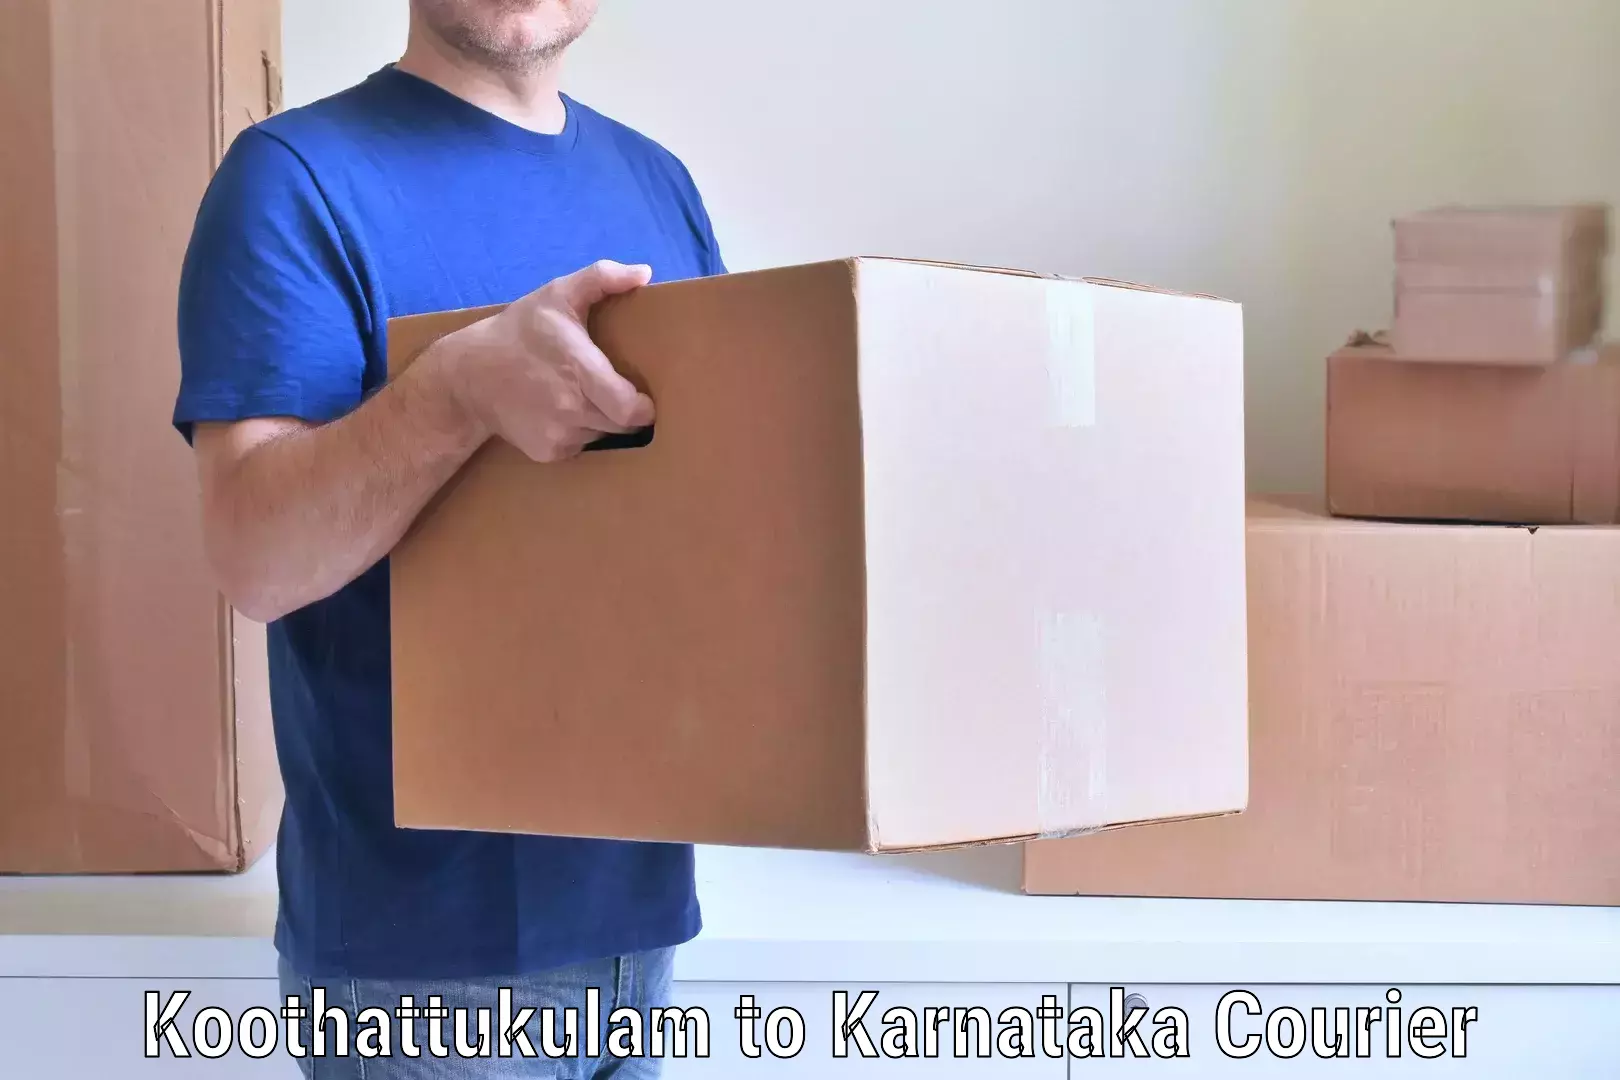 Quick furniture moving Koothattukulam to Kanjarakatte